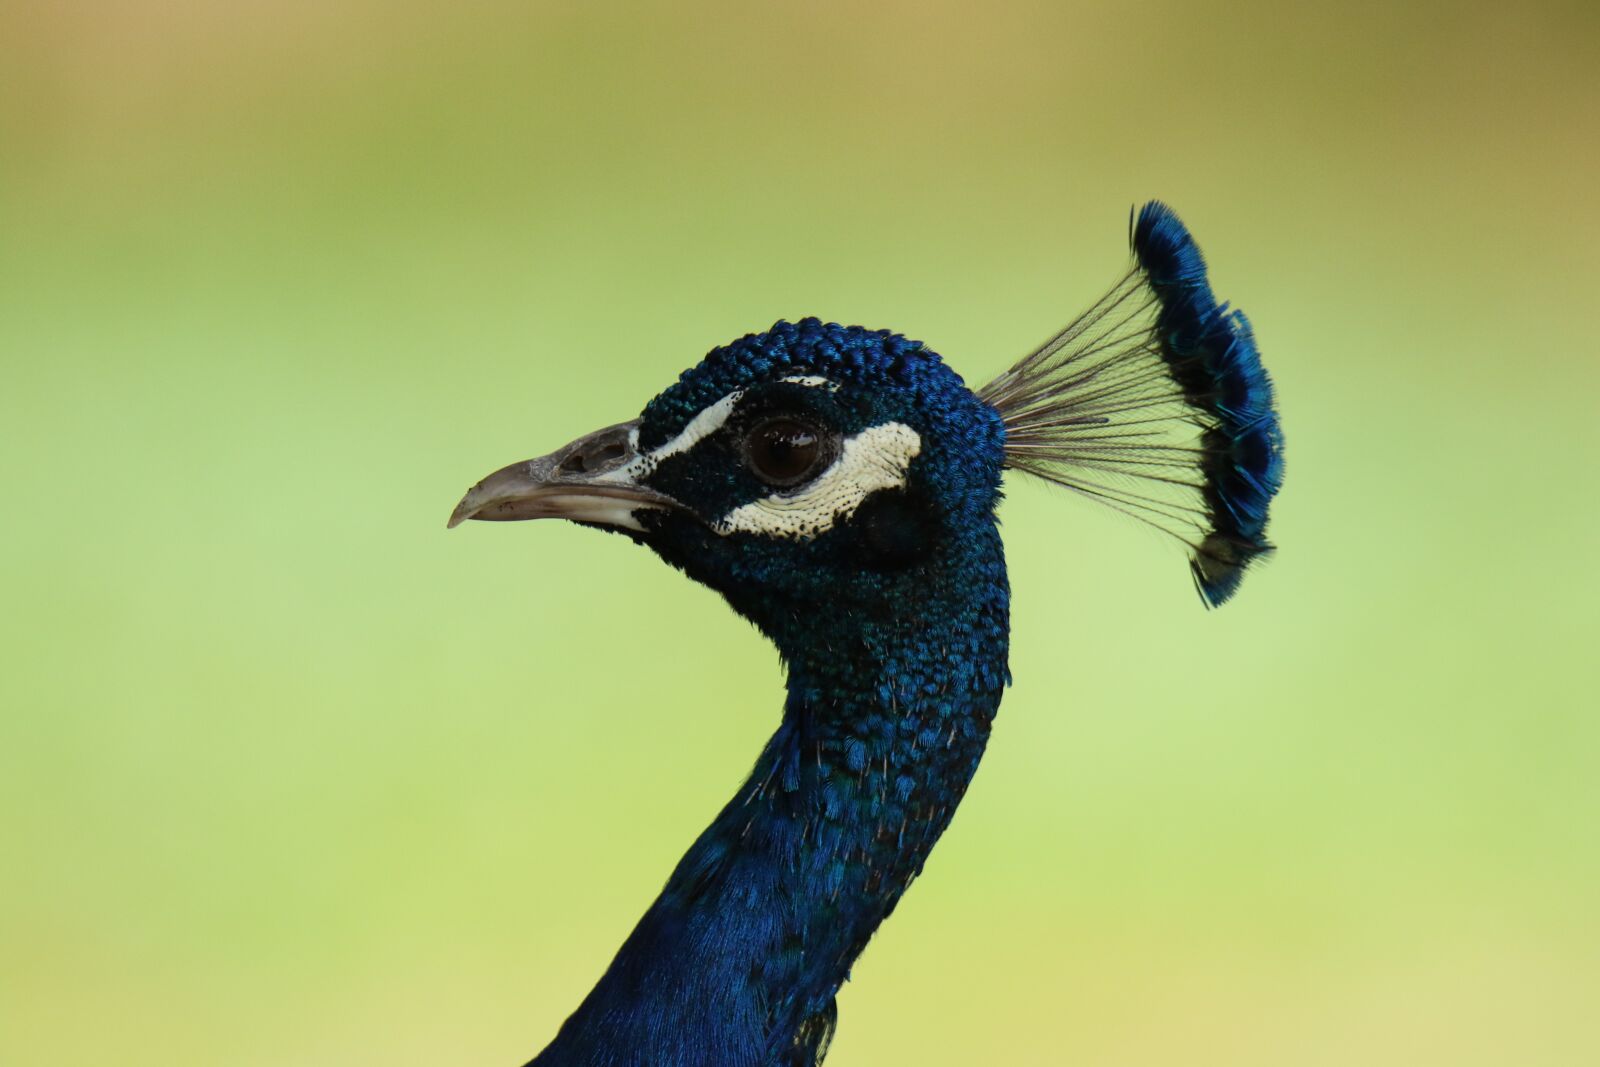 Canon EOS 7D Mark II sample photo. Peacock, bird, close up photography